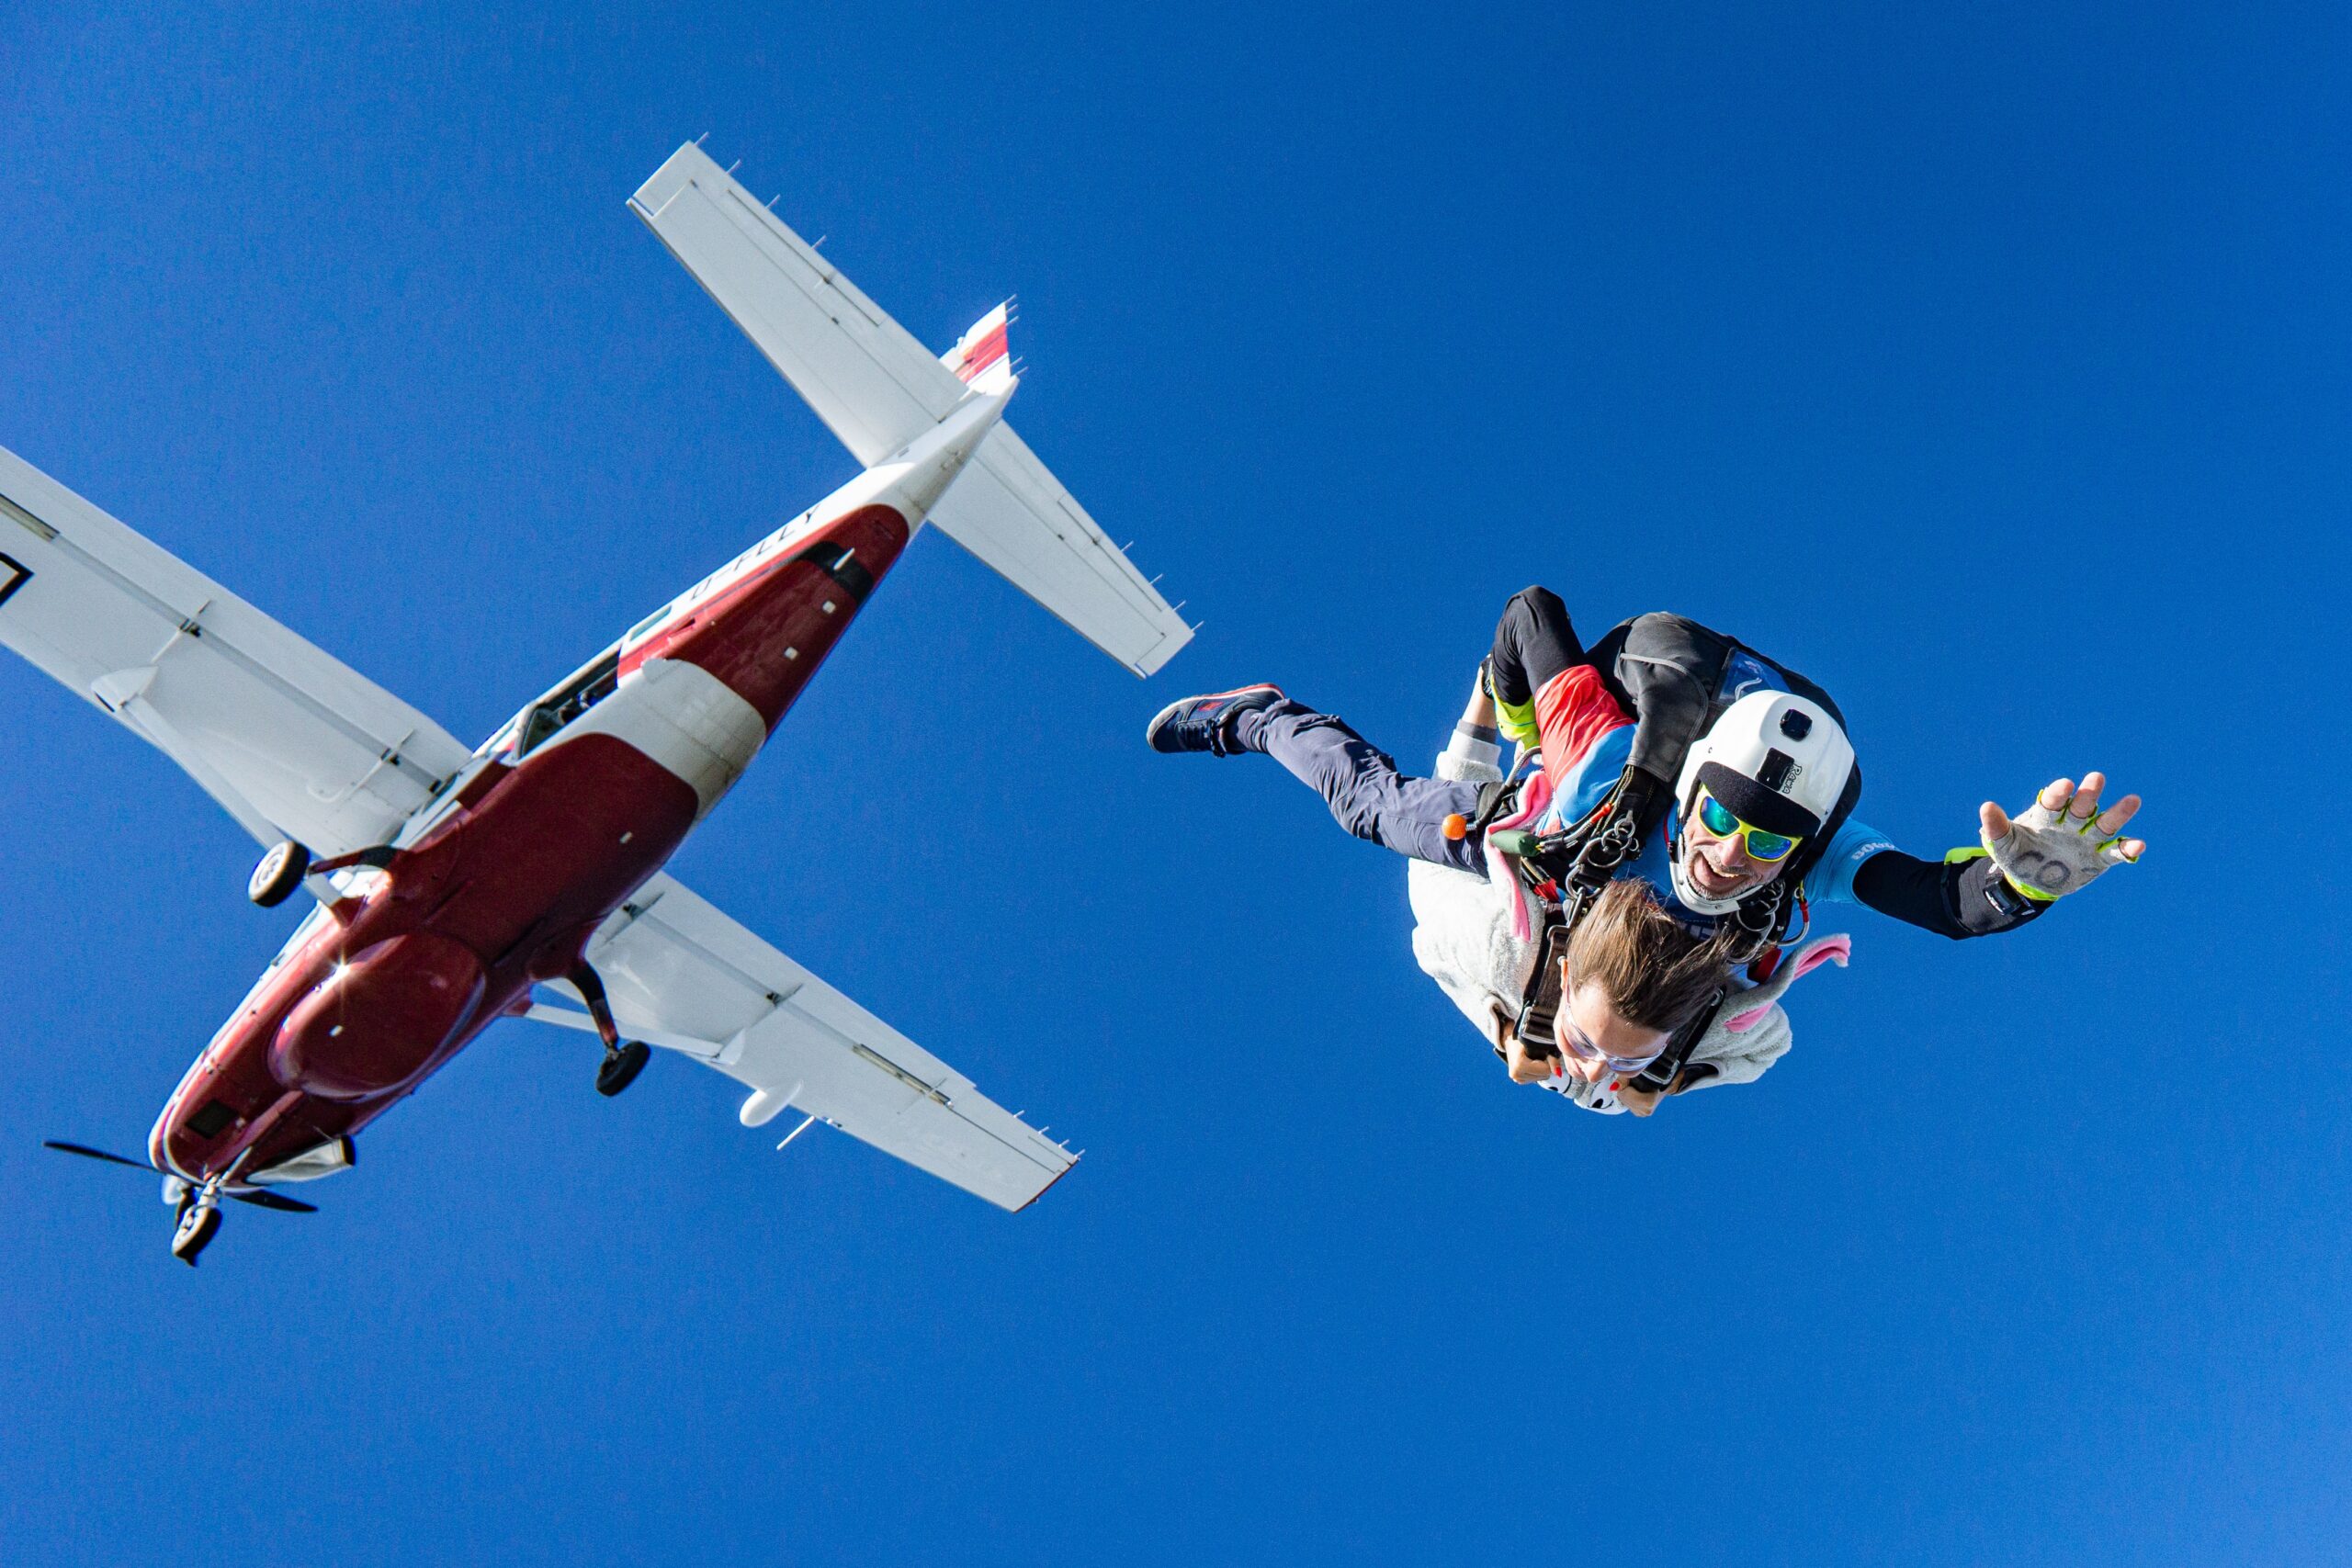 Maak jij de grote sprong? Dit is hoe je je kunt voorbereiden op parachutespringen!